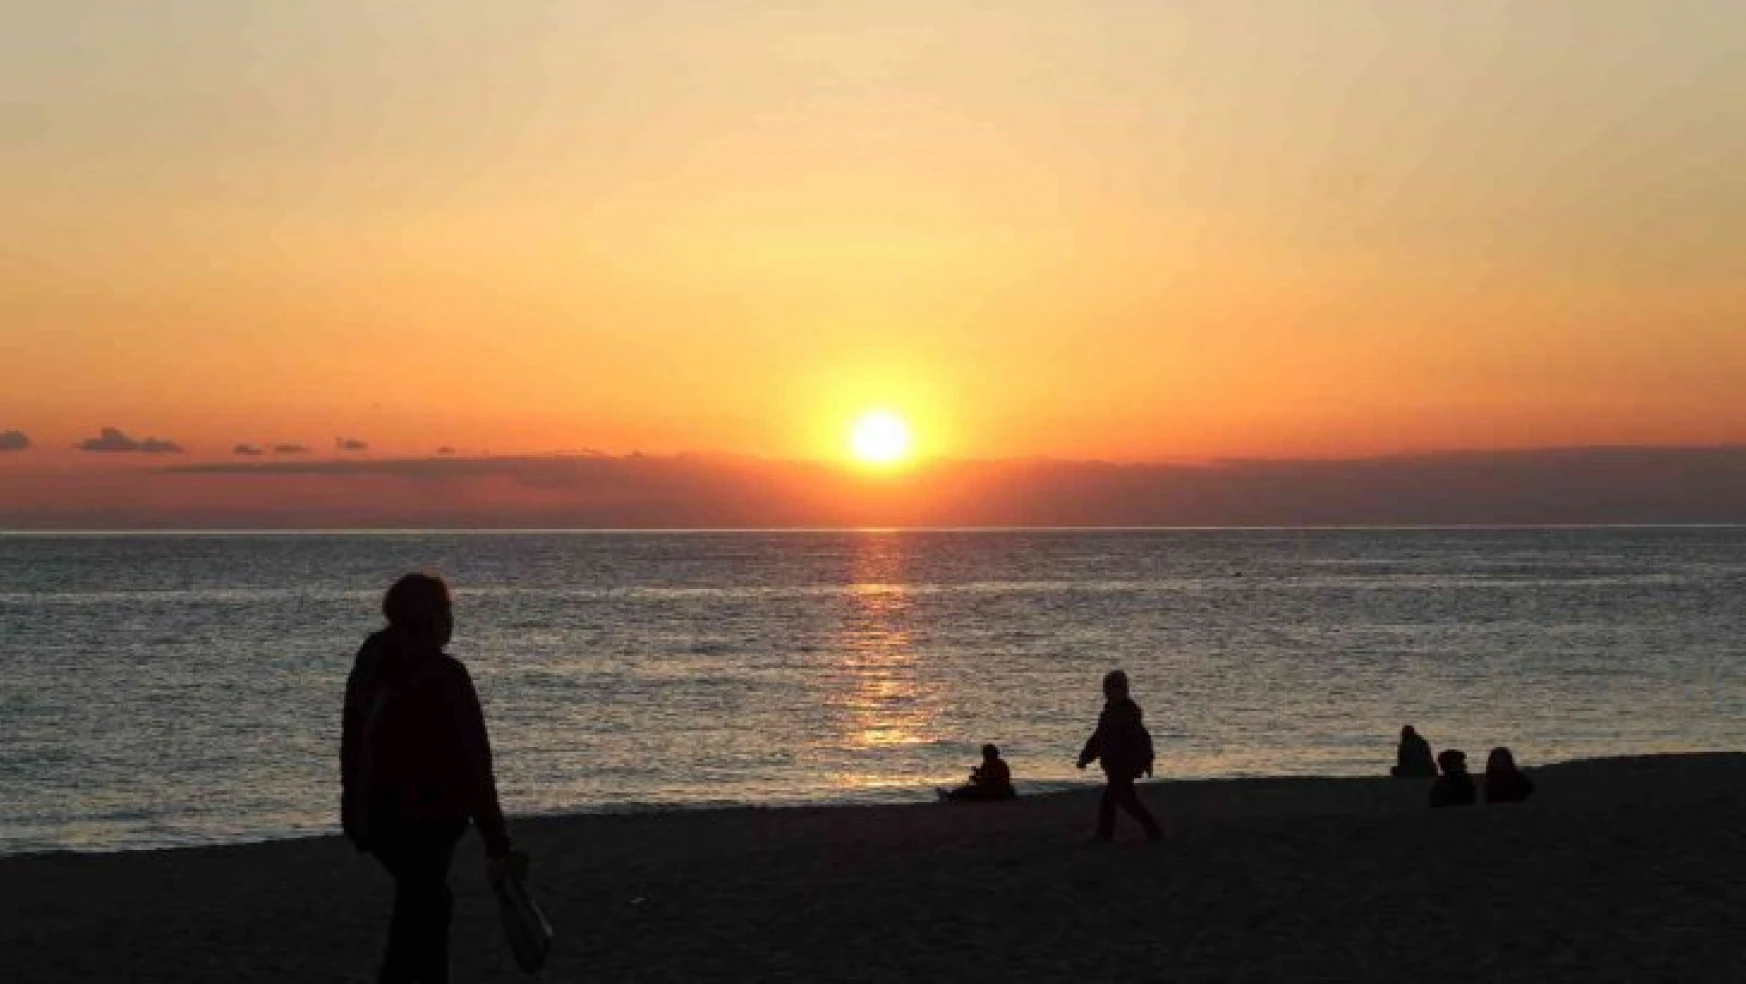 Dünyaca ünlü Damlataş Plajı'nda gün batımını onlarca kişi izledi